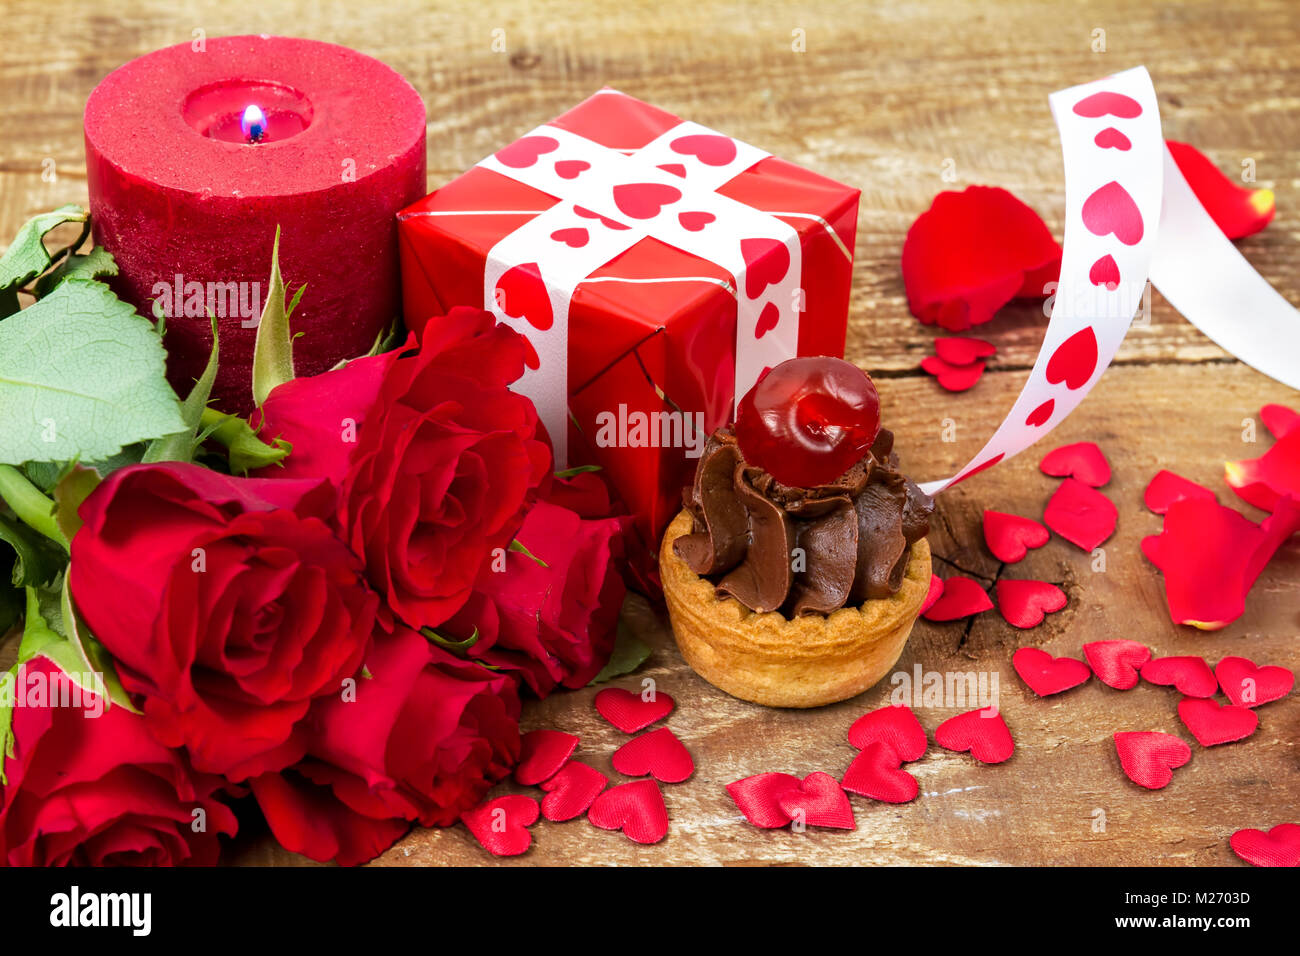 Avec cherry Cupcake en face de bouquet de roses rouges et des bougies sur fond de bois. Valentines Day concept. Se concentrer sur des gâteaux ! Banque D'Images